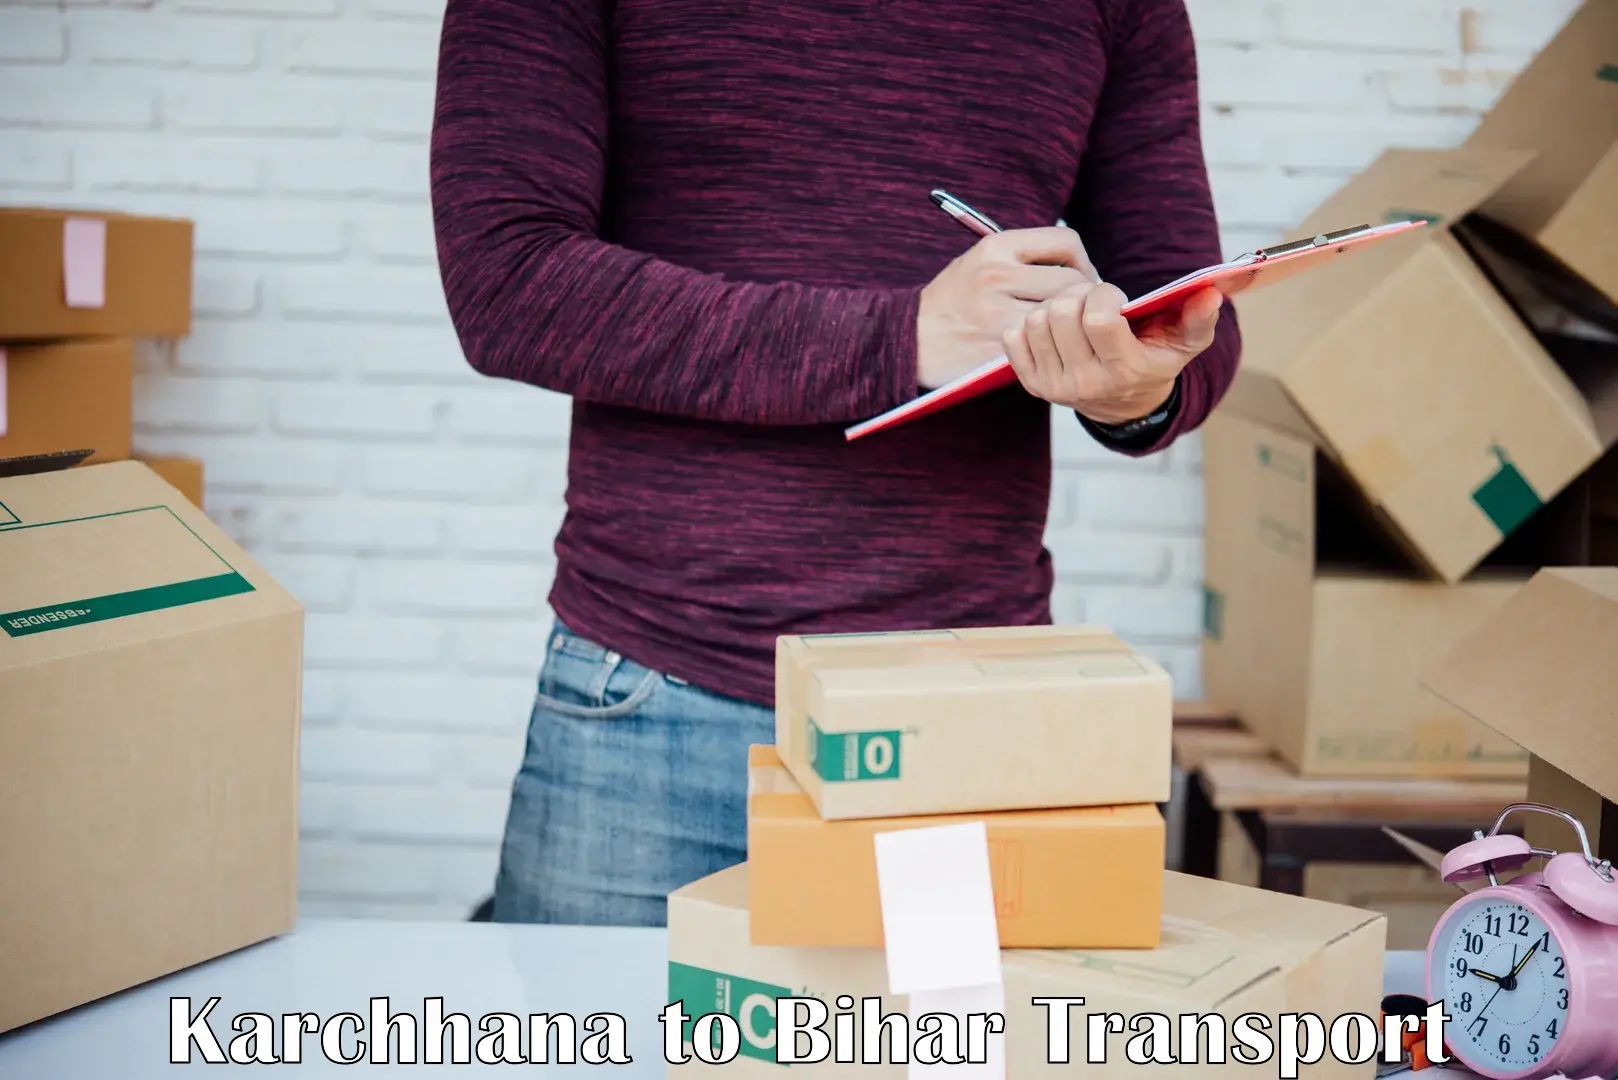 Shipping services Karchhana to Maharajganj Vaishali